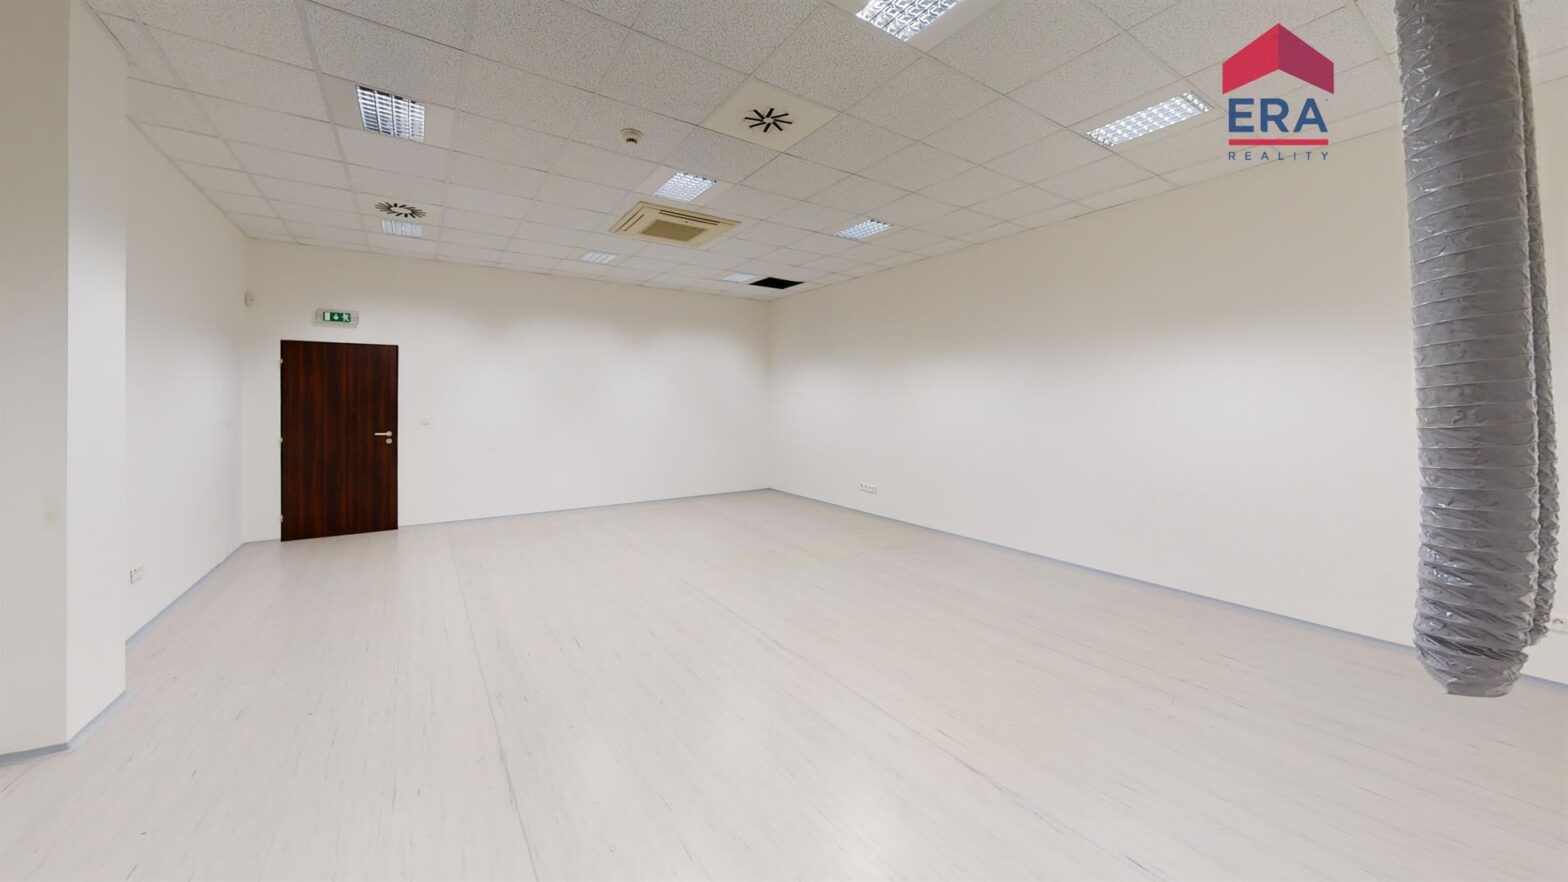 Pronájem kancelářských prostor – studia celkem 305 m2, UL – centrum